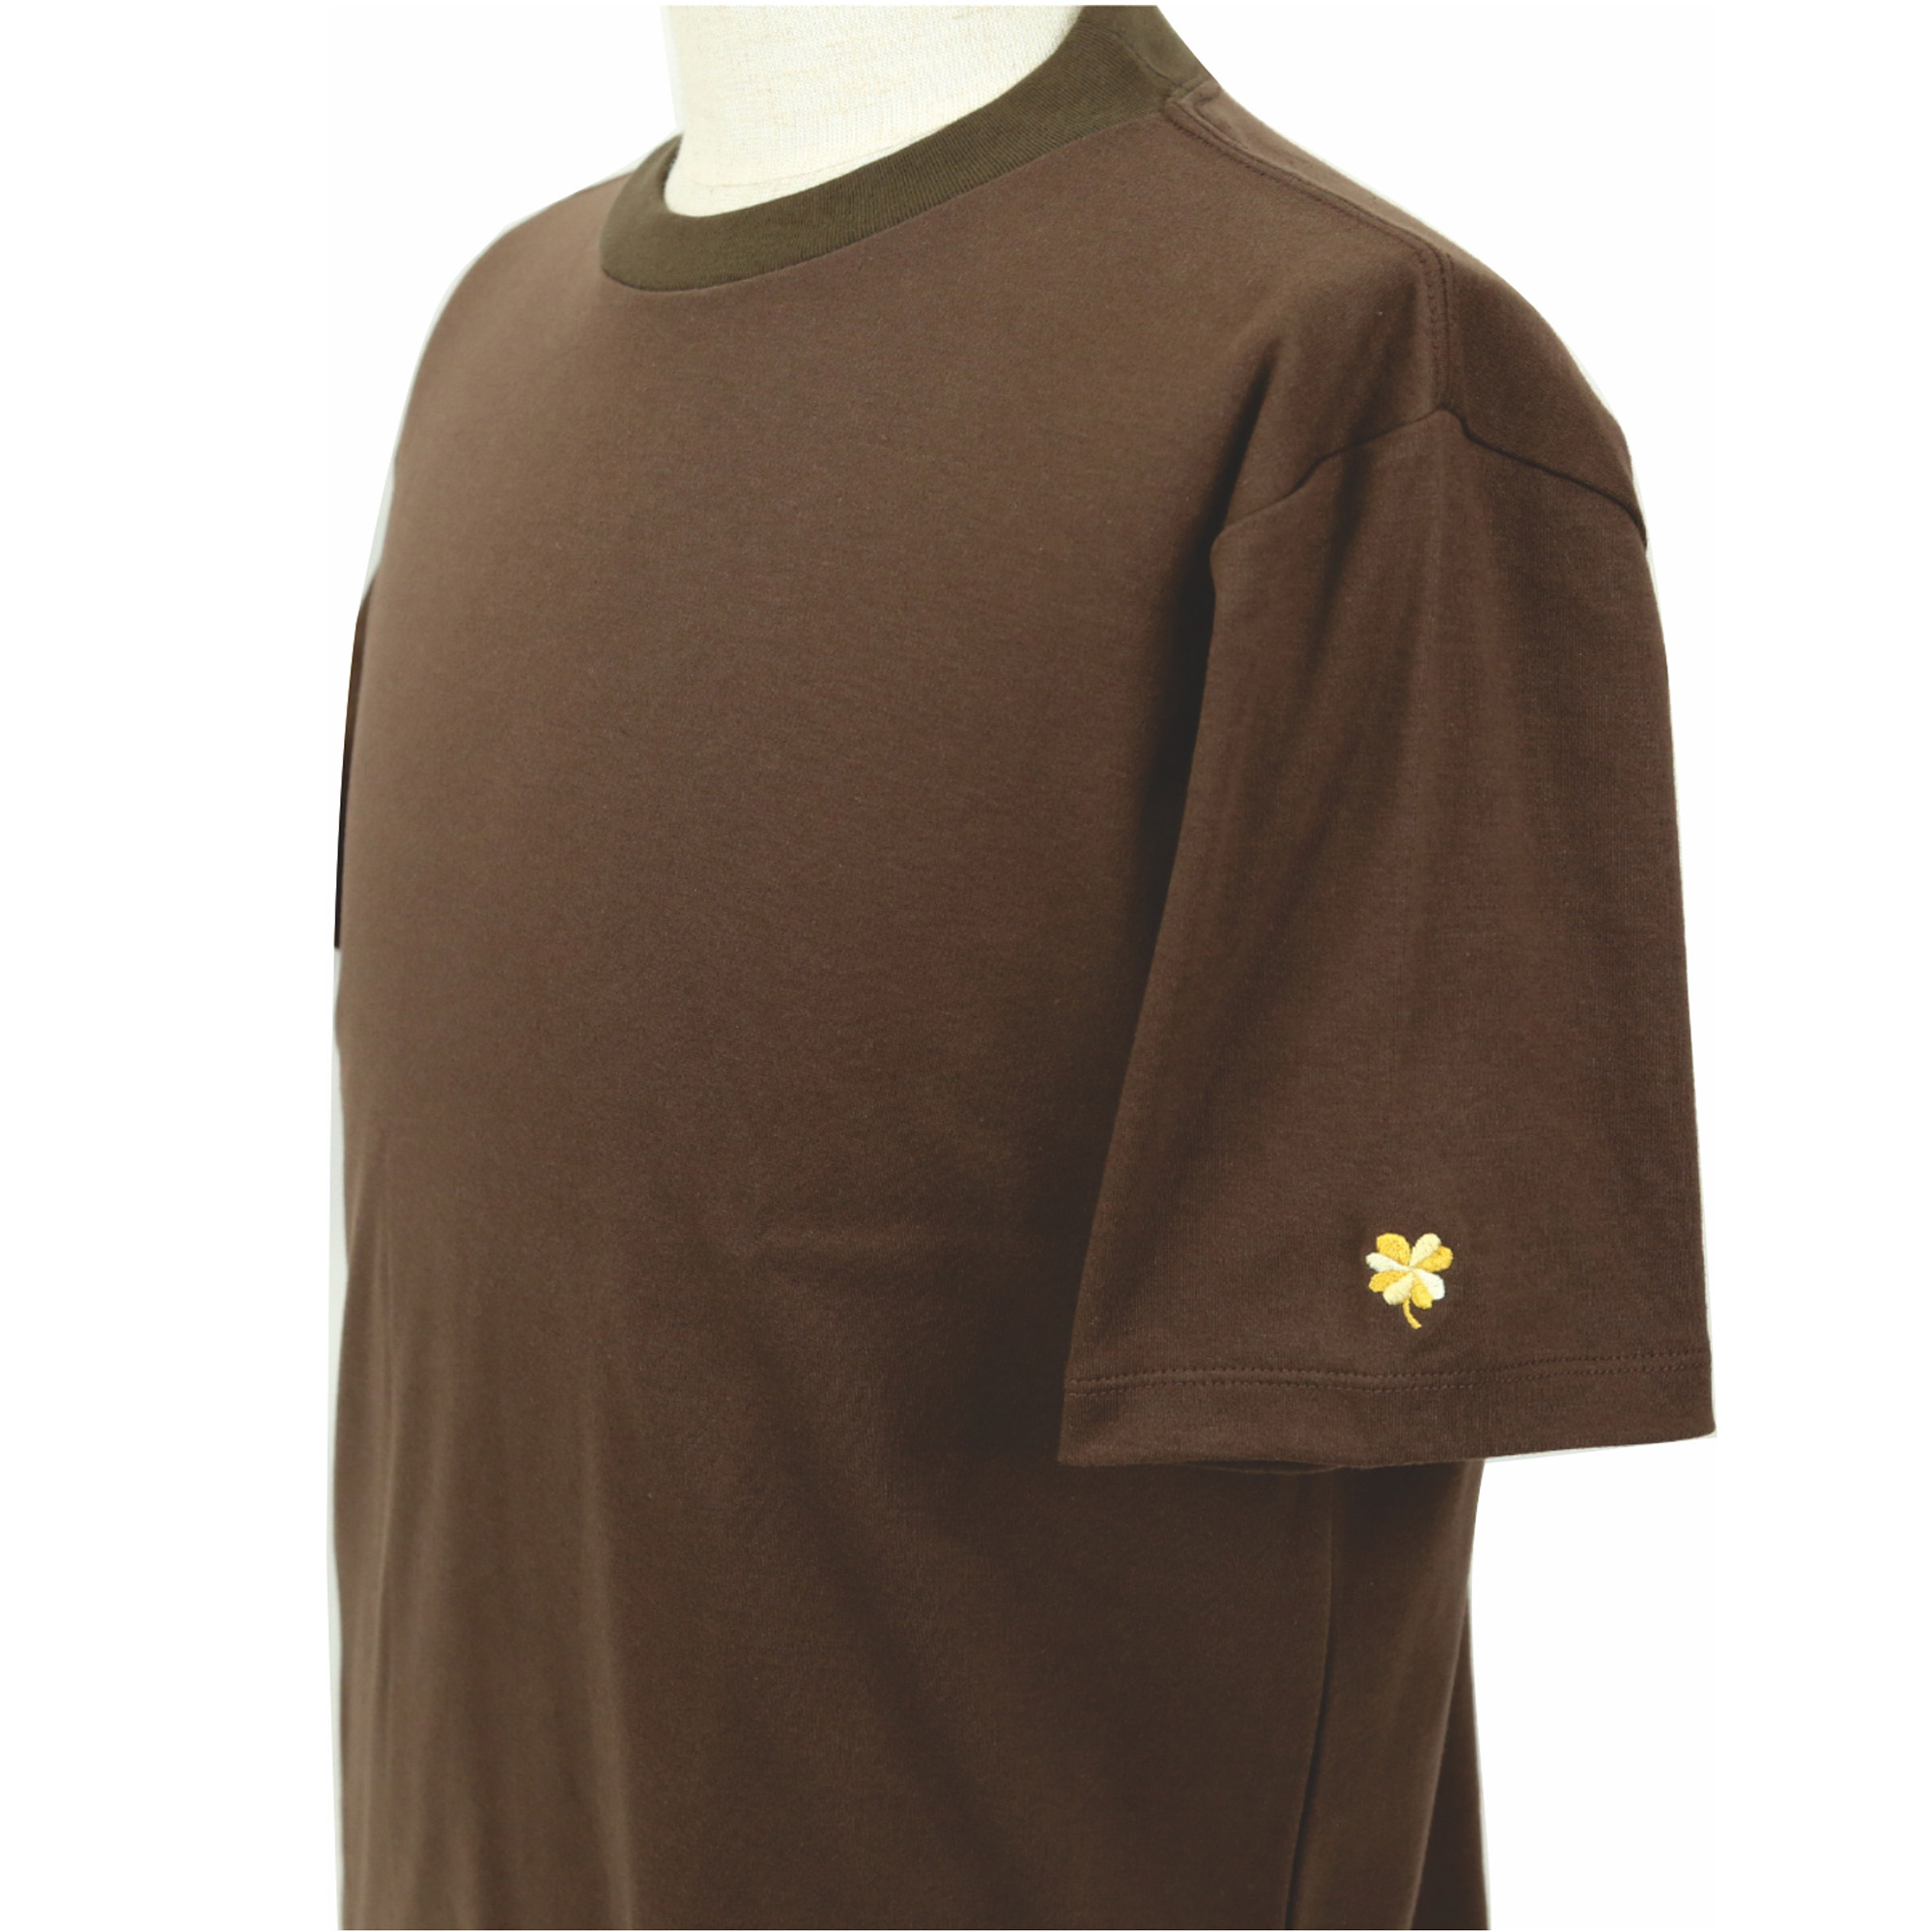 【値下げしました】プレミアムドレス Tシャツ  半袖  袖口刺繍  ブラウン  FATTURA  メンズファッション  日本製